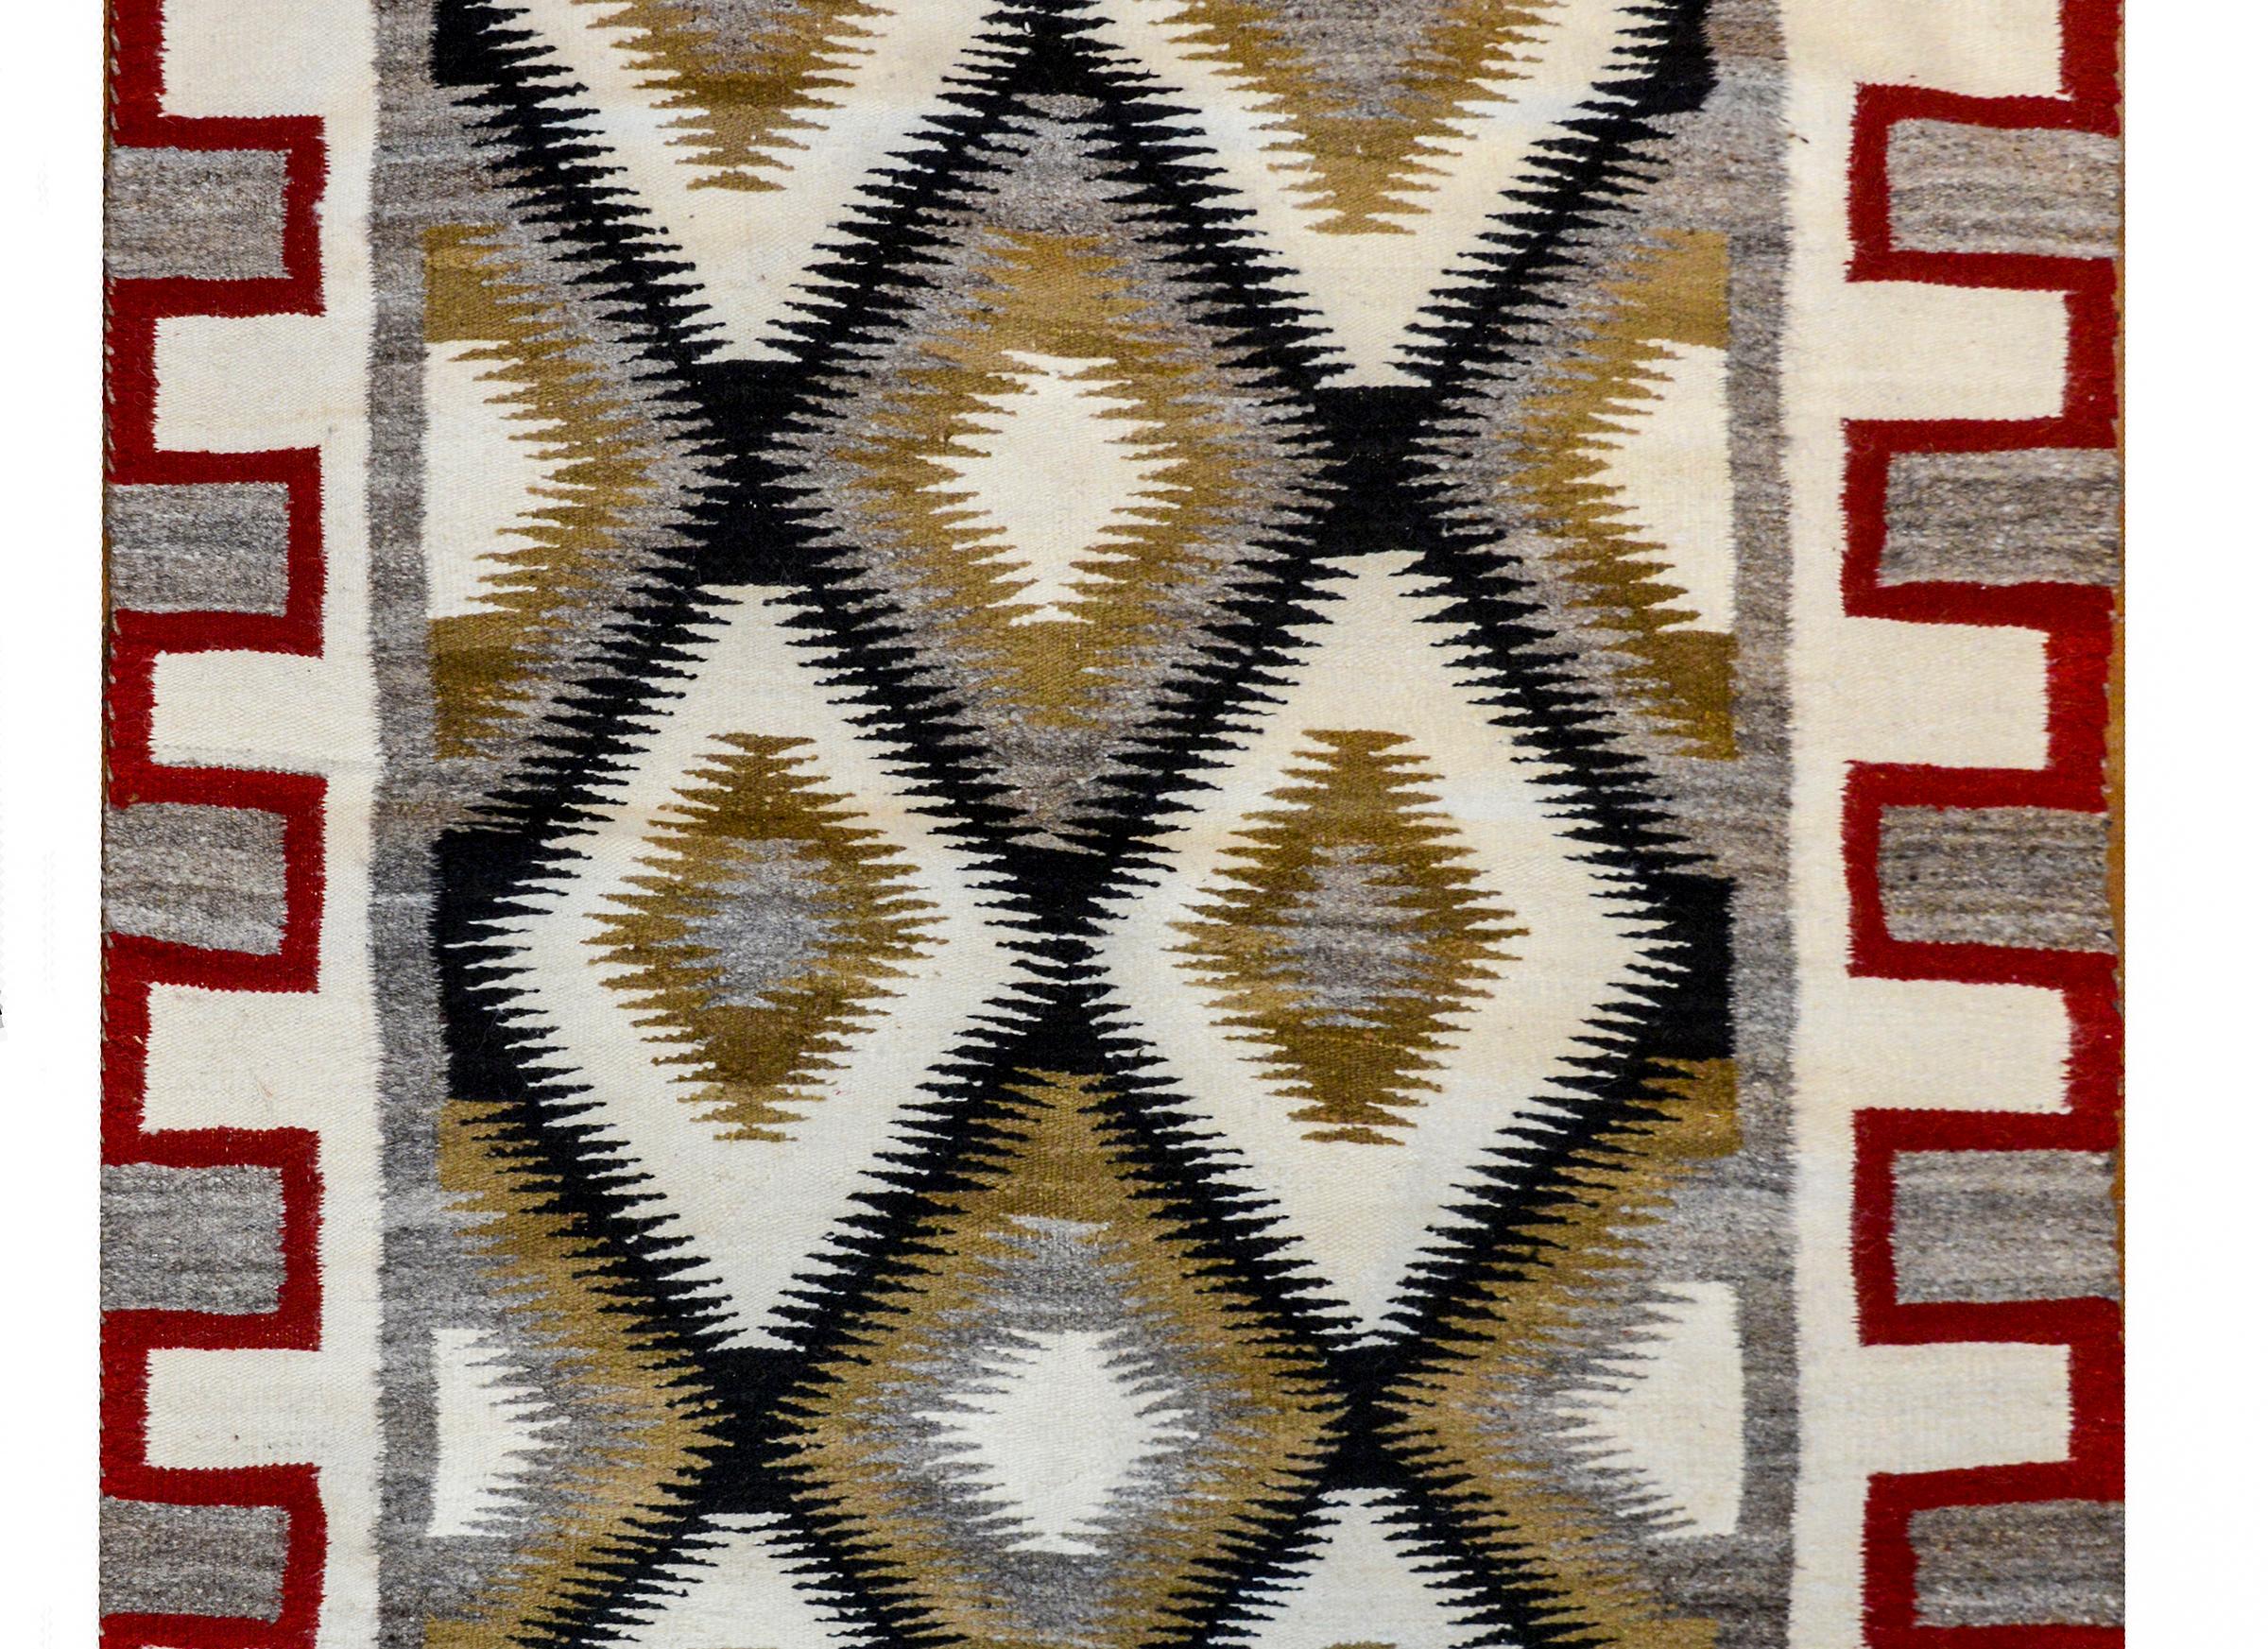 Un tapis Navajo audacieux du milieu du 20e siècle avec un motif de diamants sur toute la surface, tissé en laine noire, blanche et brune, entouré d'une large bordure en escalier cramoisie, blanche et grise.